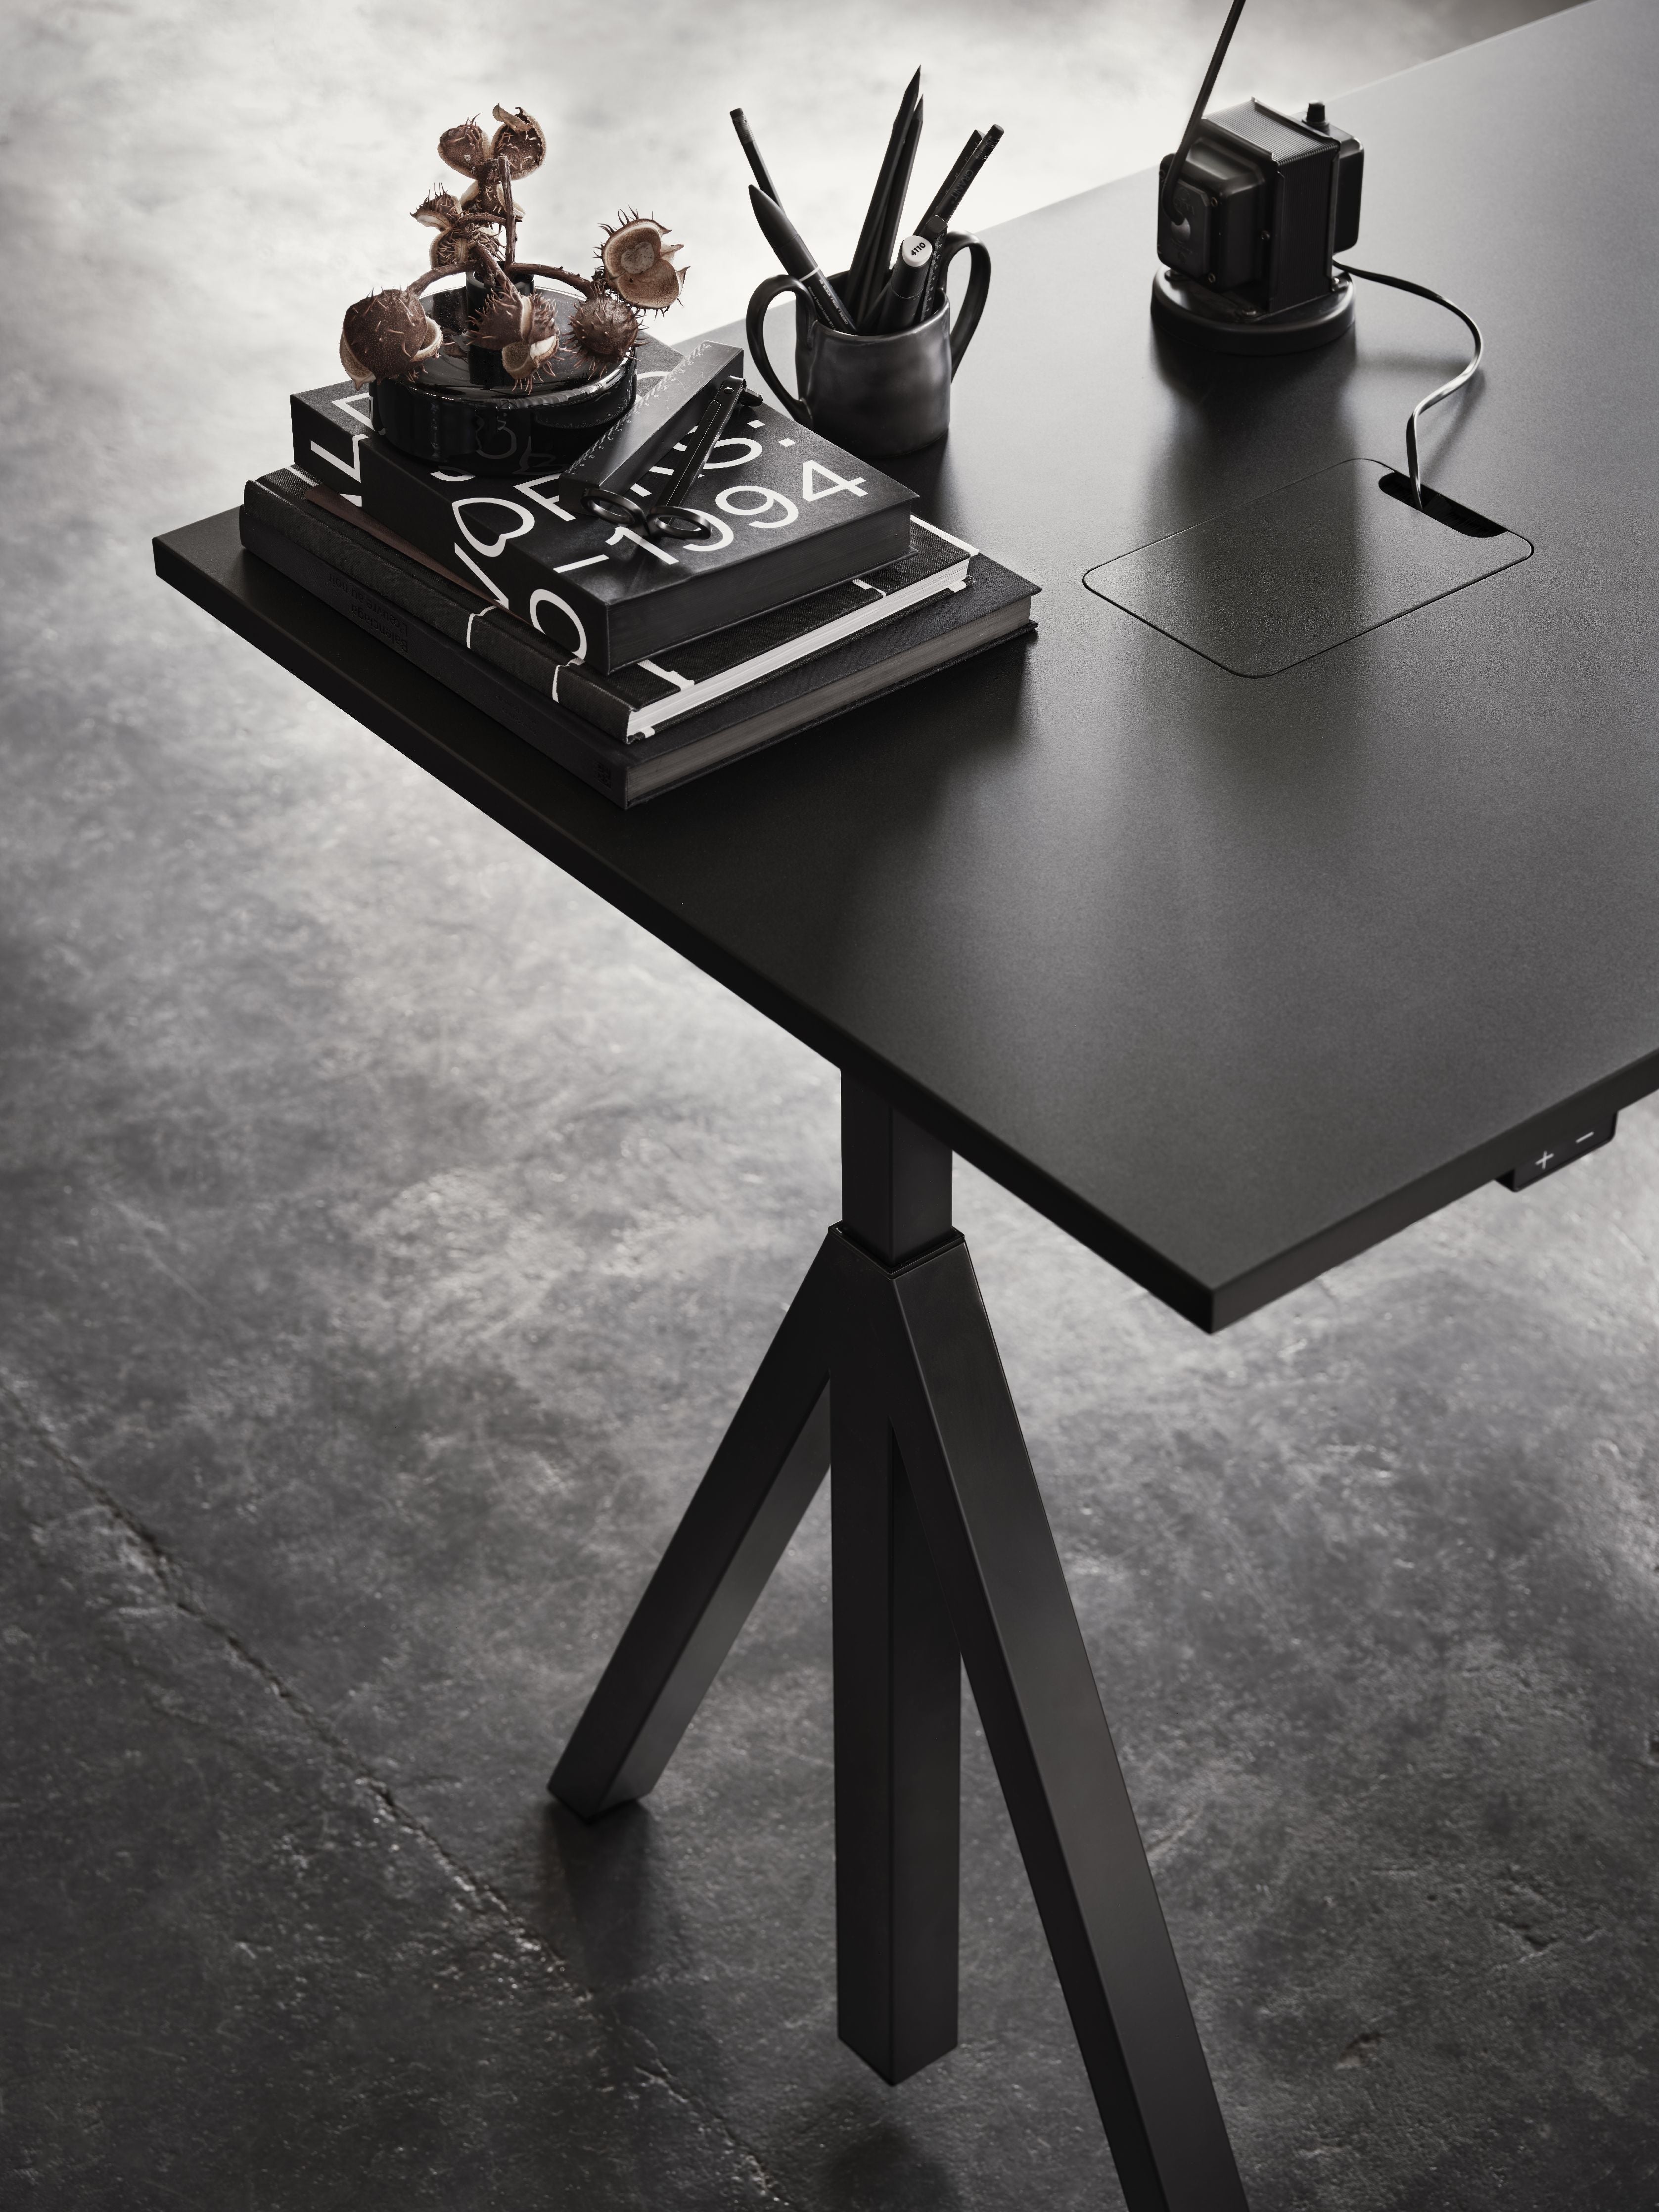 String Furniture Tableau de travail réglable en hauteur 90x180 cm, chêne / noir